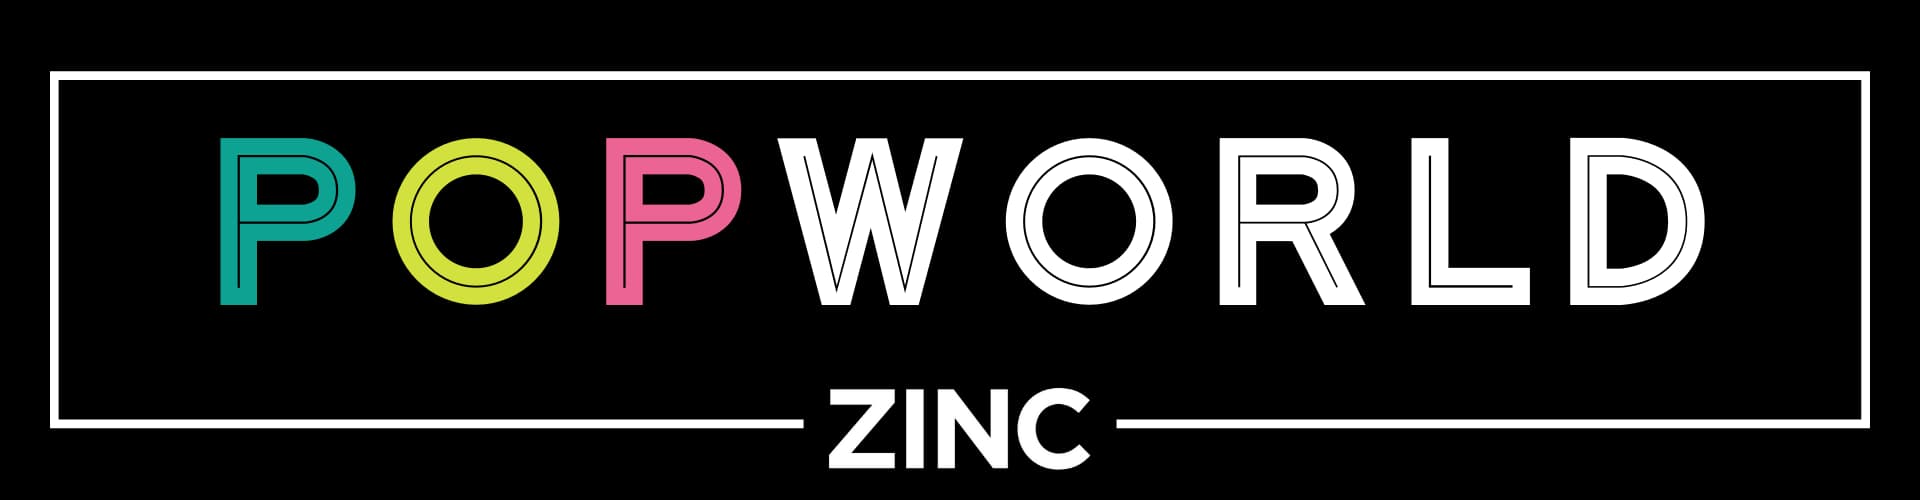 Popworld at Zinc